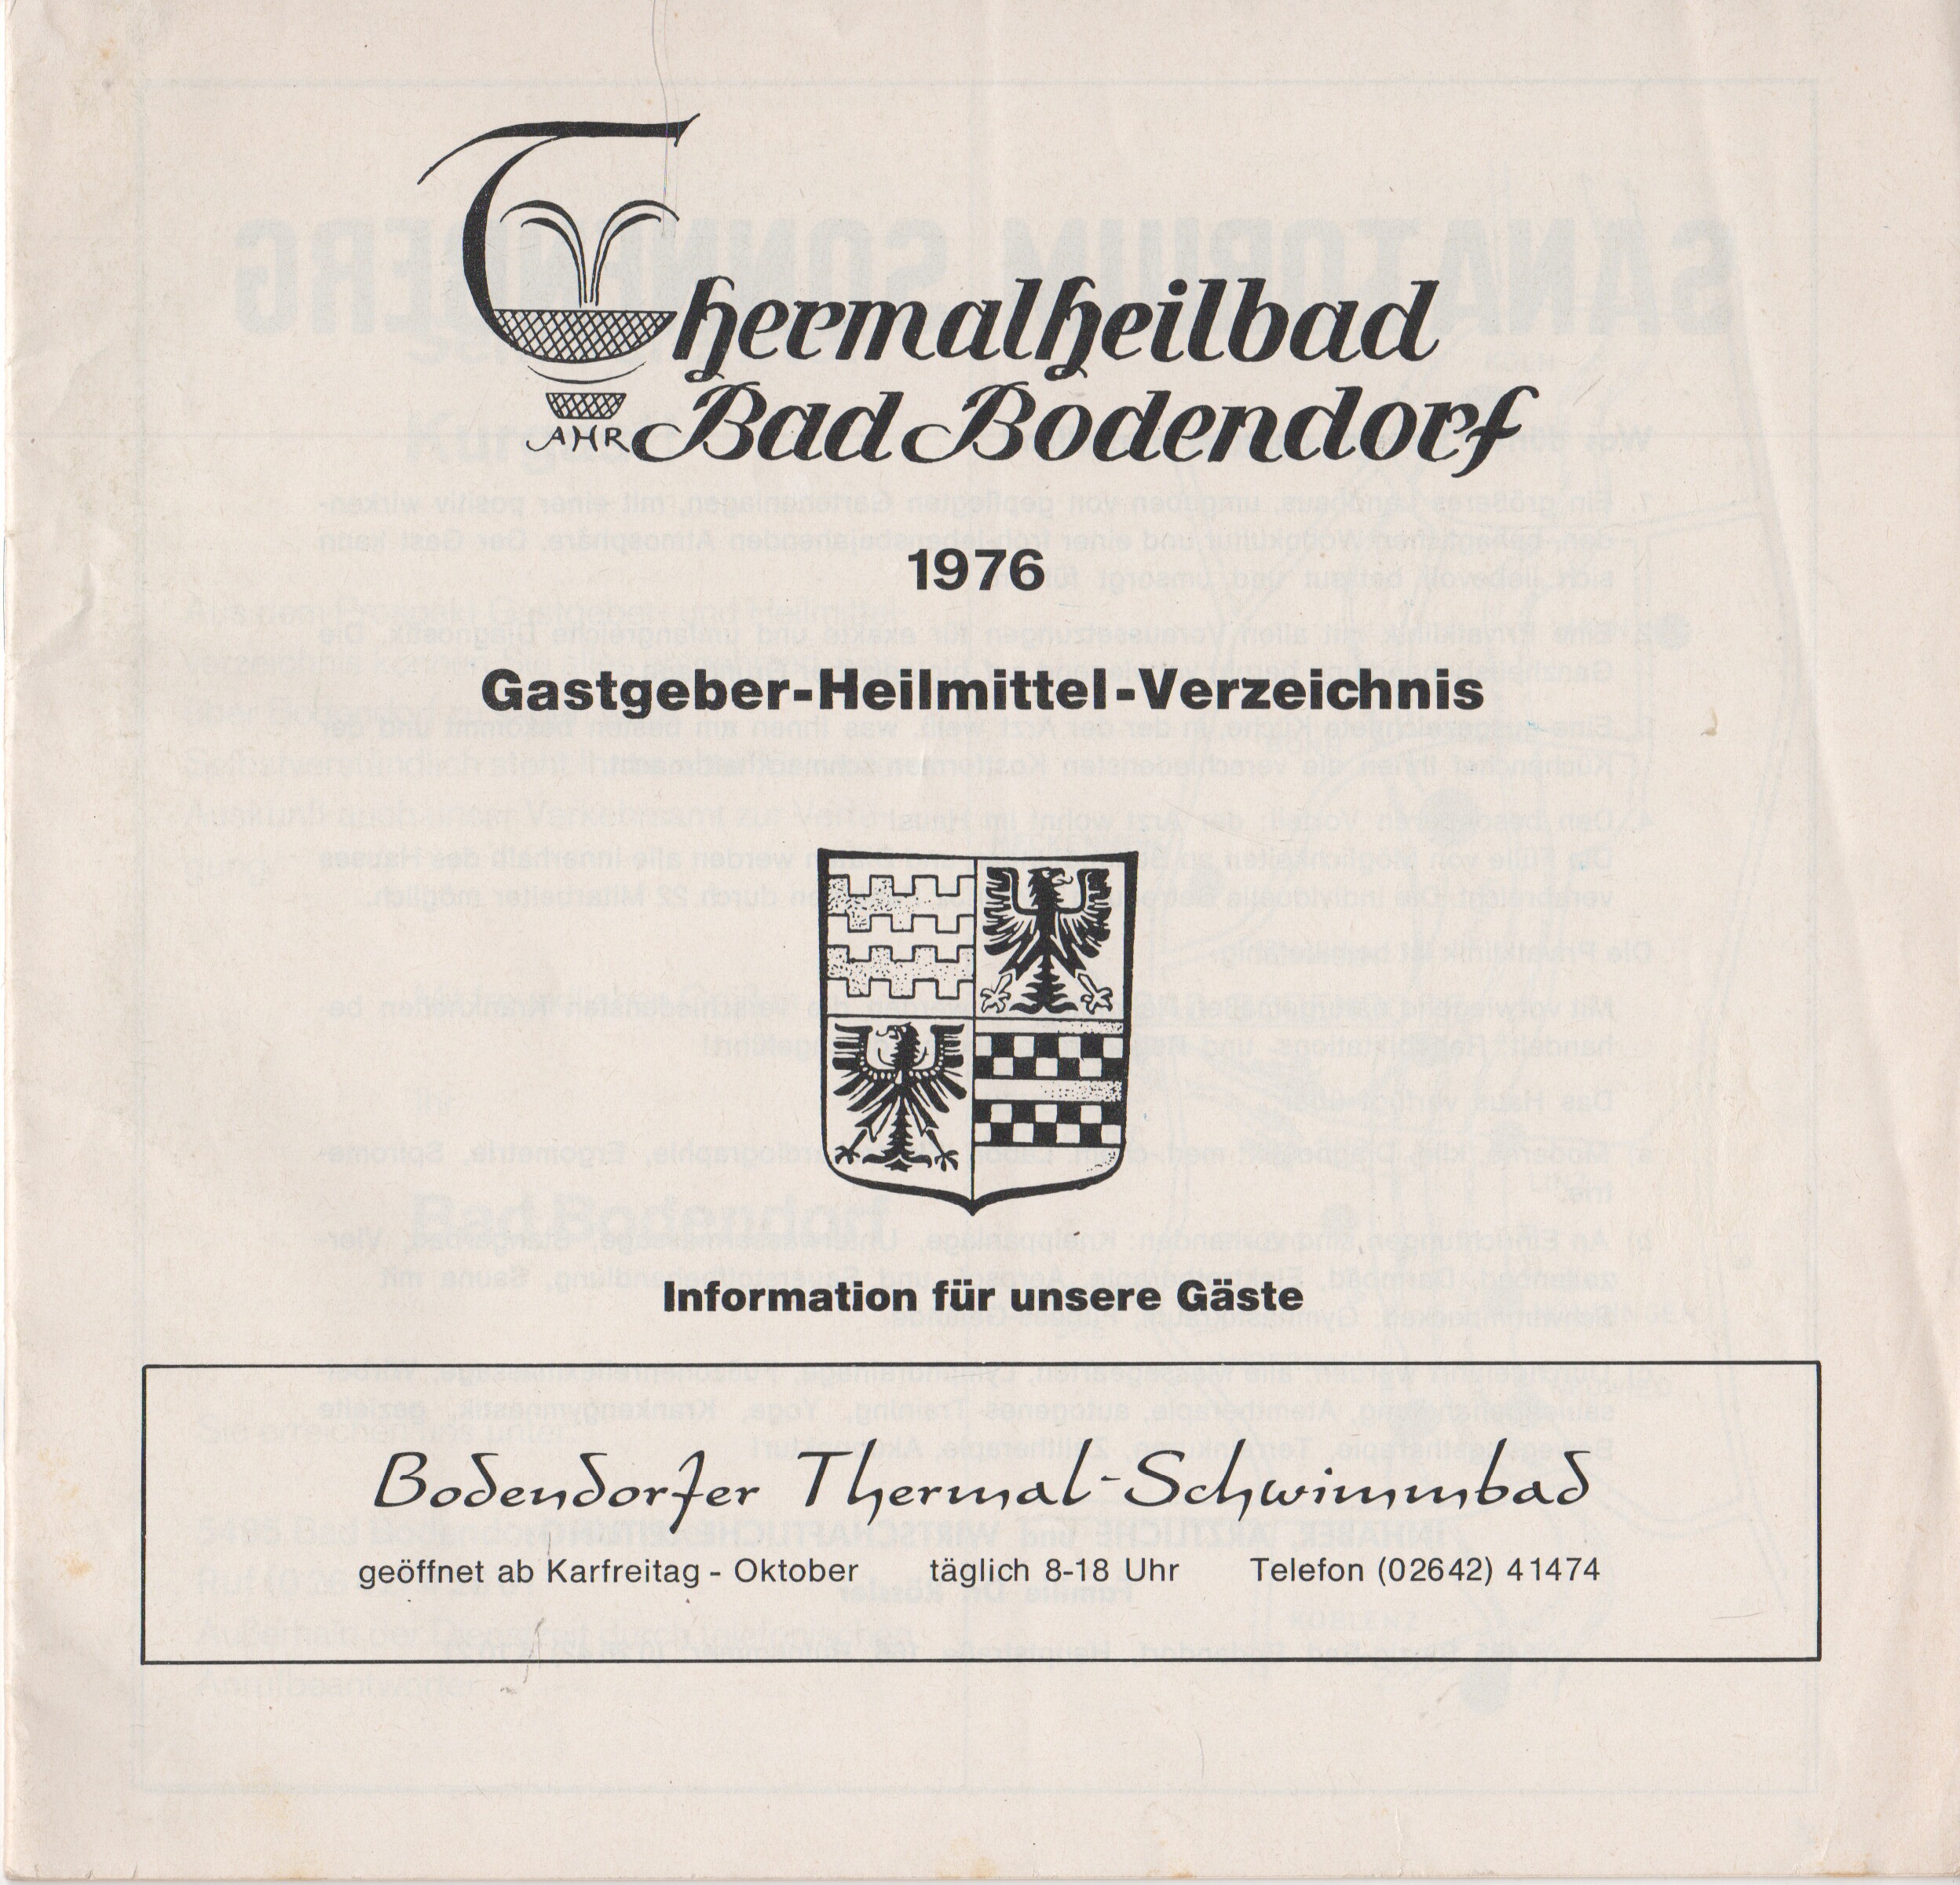 Gastegeber-Heilmittelverzeichnis Thermalheilbad Bad Bodendorf 1976 (Heimatarchiv Bad Bodendorf CC BY-NC-SA)